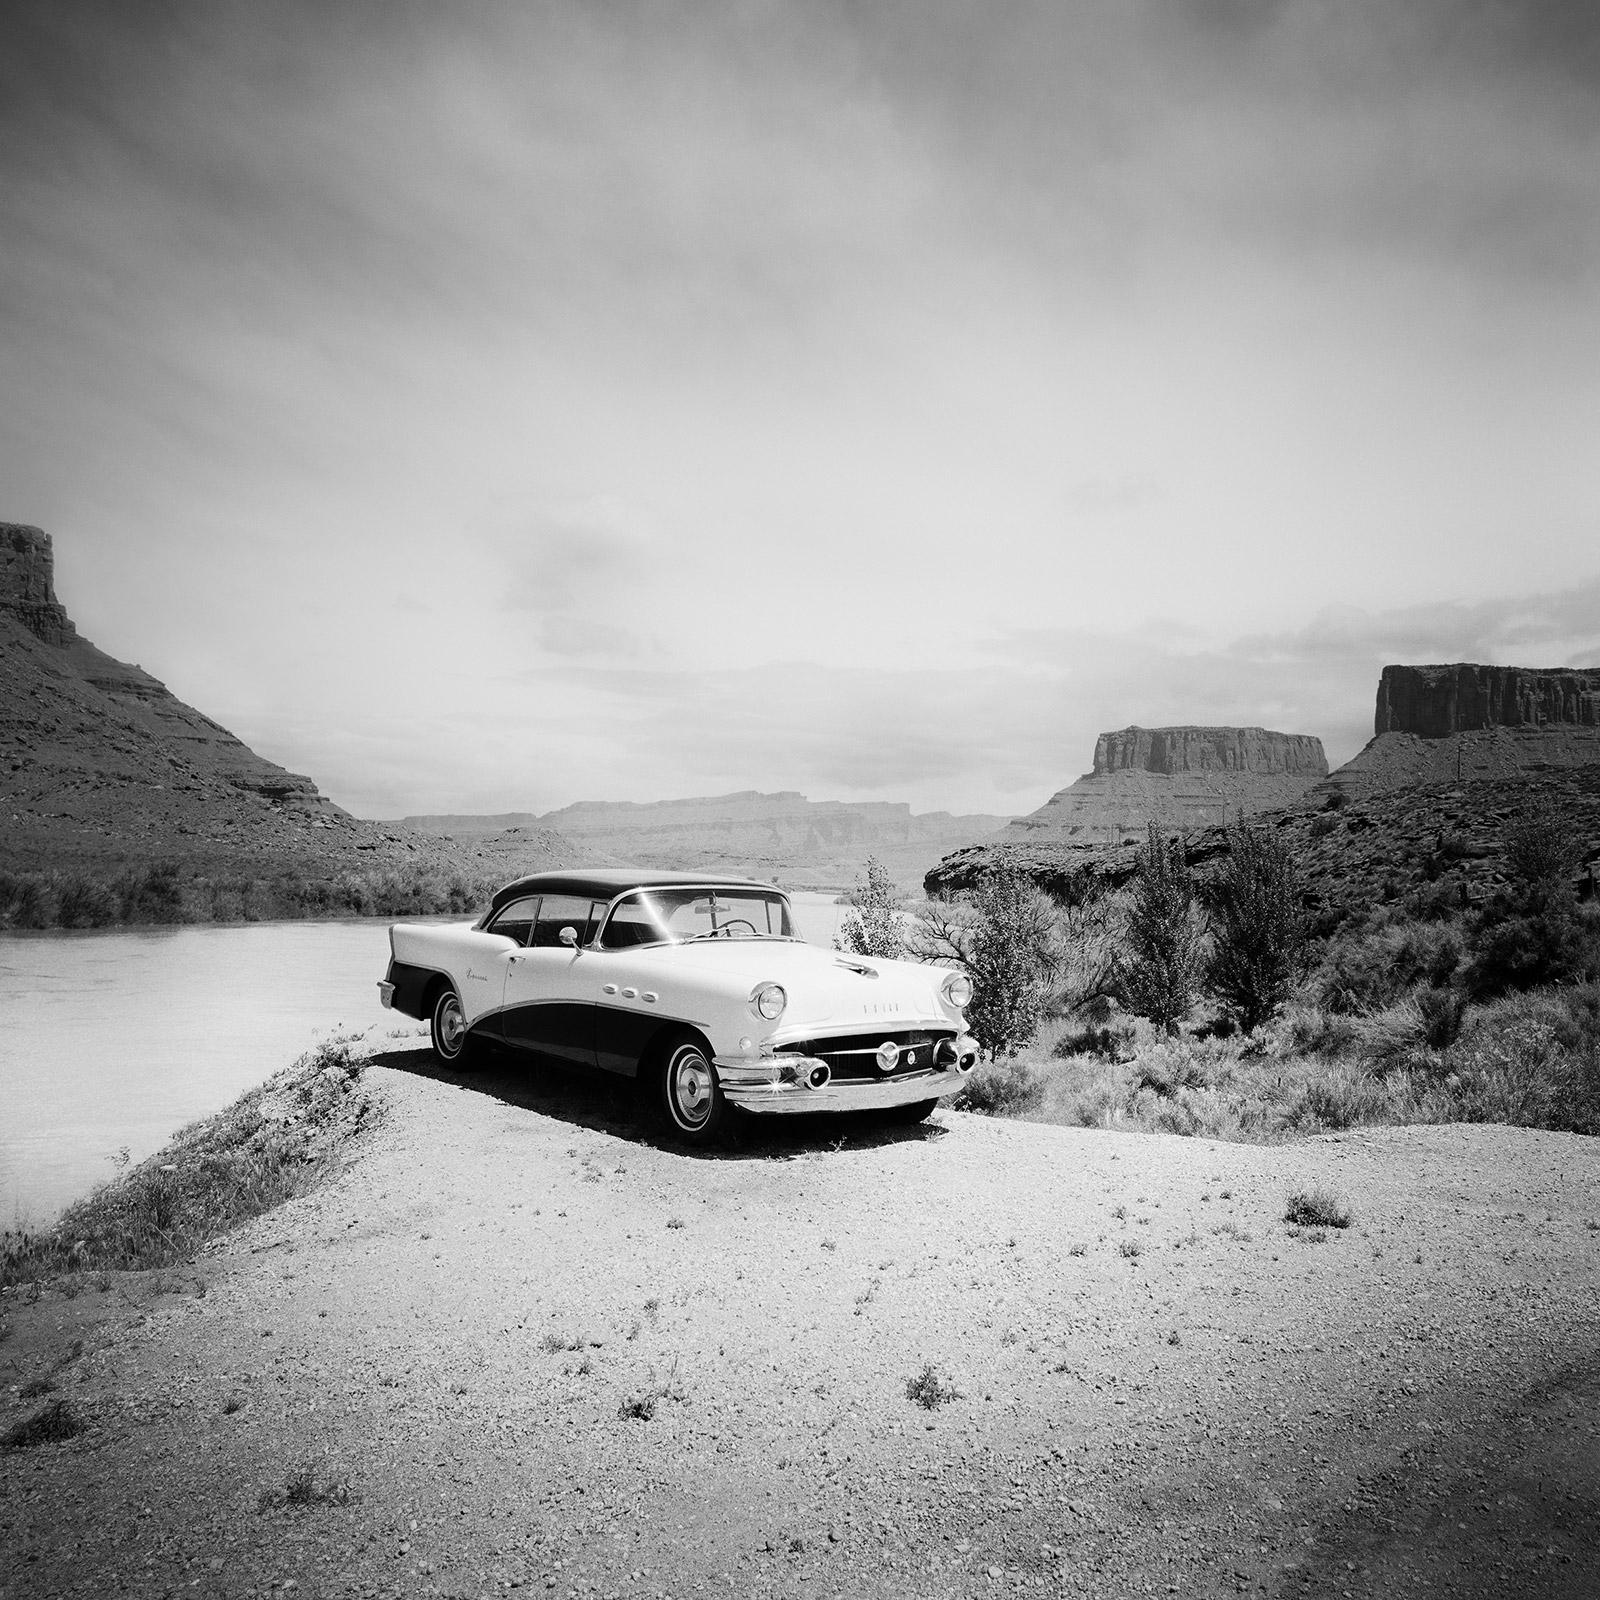 Gerald Berghammer Black and White Photograph – Buick 60 Century Convertible, Wüste, USA, schwarz-weiß Landschaftsfotografie